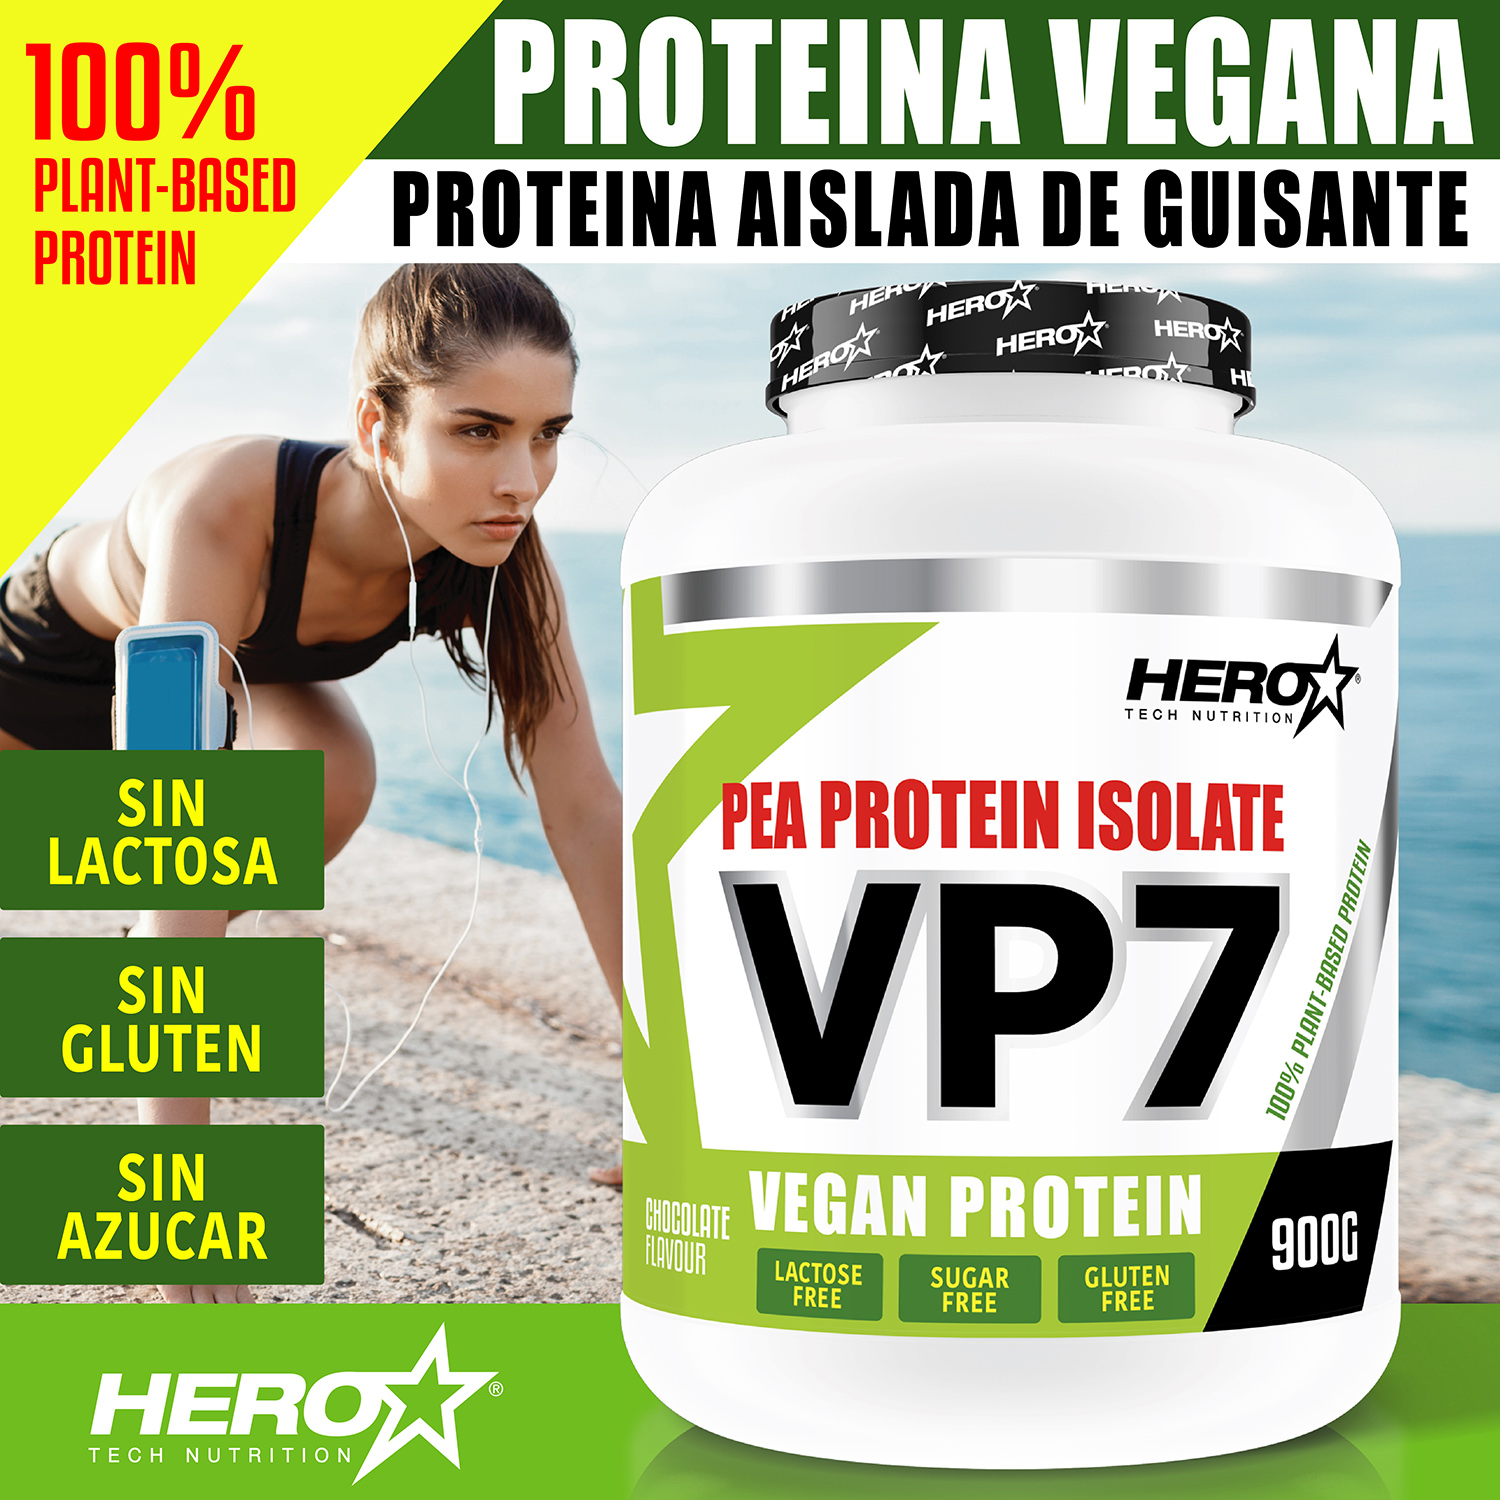 VP7 PROTEINA VEGANA DE GUISANTE HERO TECH NUTRITION herotechnutrition.com